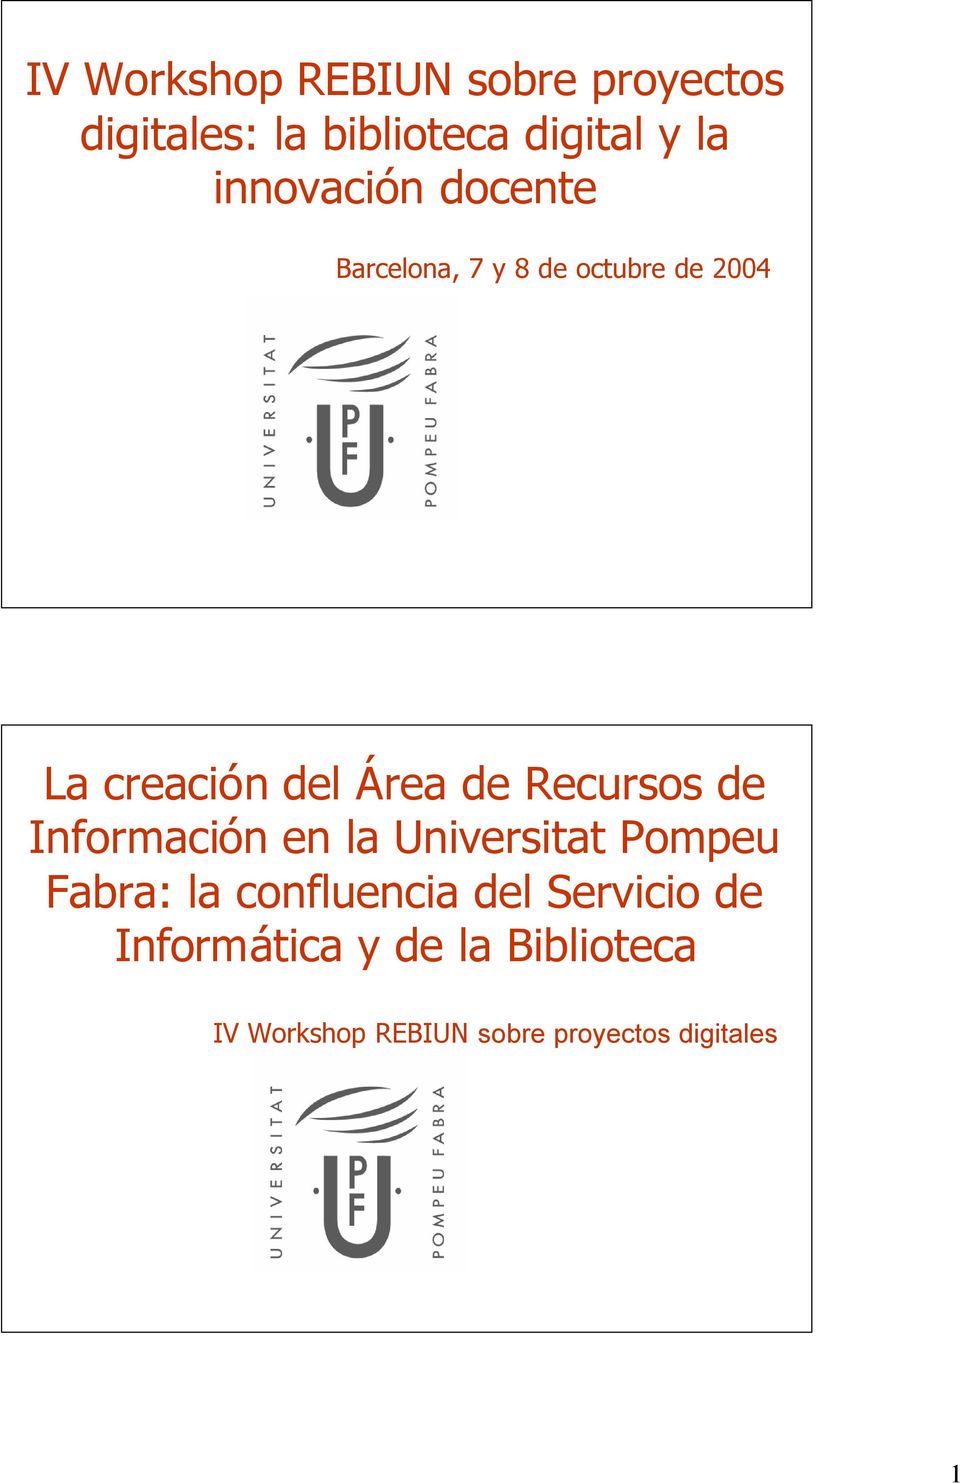 Recursos de Información en la Universitat Pompeu Fabra: la confluencia del